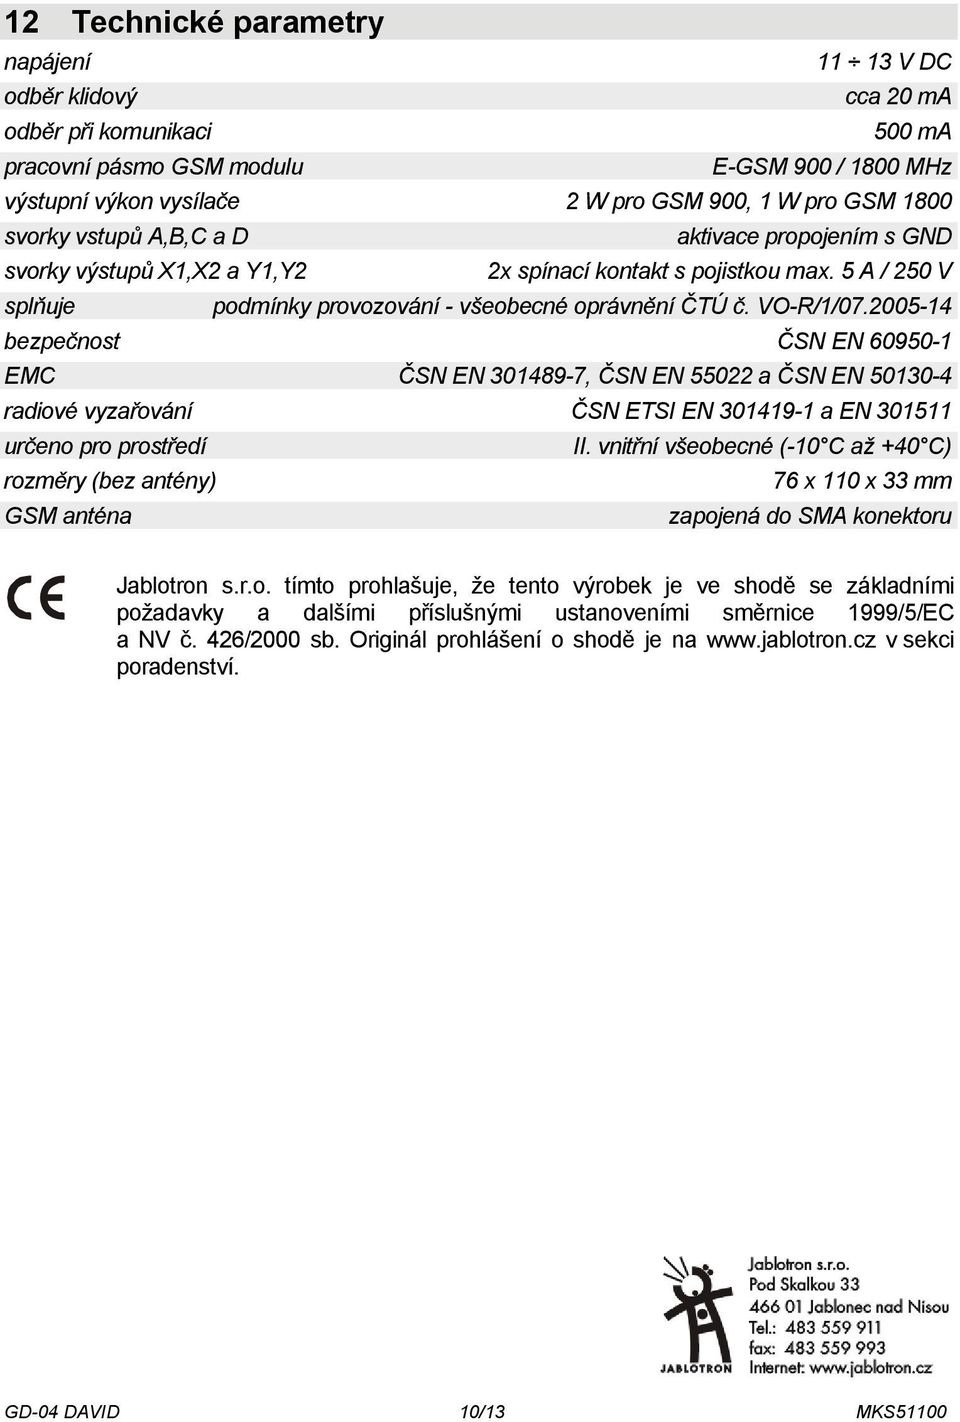 2005-14 bezpečnost ČSN EN 60950-1 EMC ČSN EN 301489-7, ČSN EN 55022 a ČSN EN 50130-4 radiové vyzařování ČSN ETSI EN 301419-1 a EN 301511 určeno pro prostředí II.